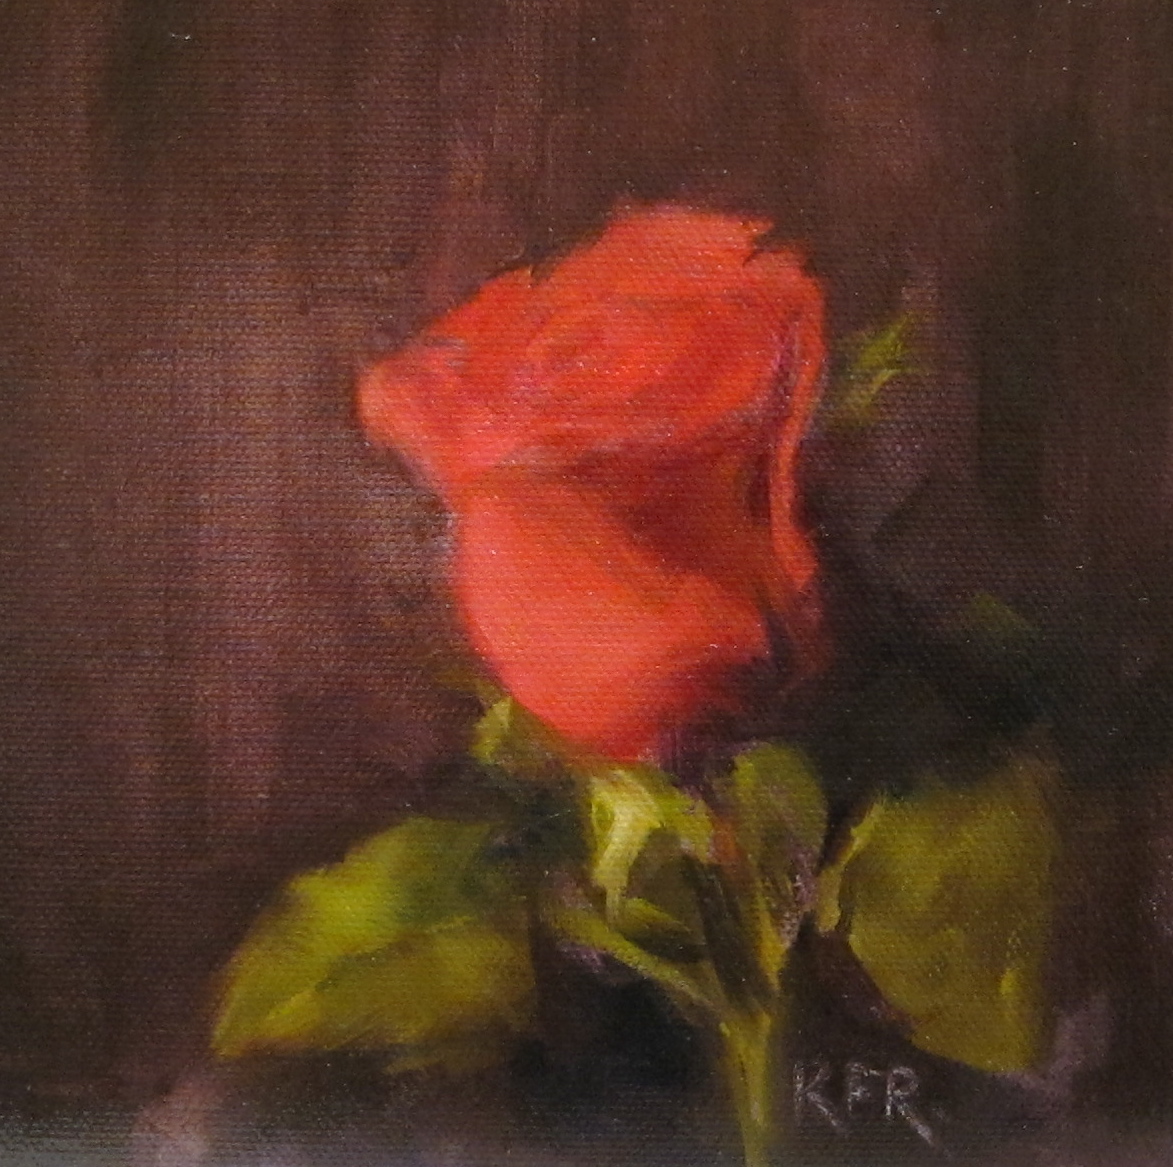 Karen F. Rose ~ My Painting Journey: Anniversary Rose